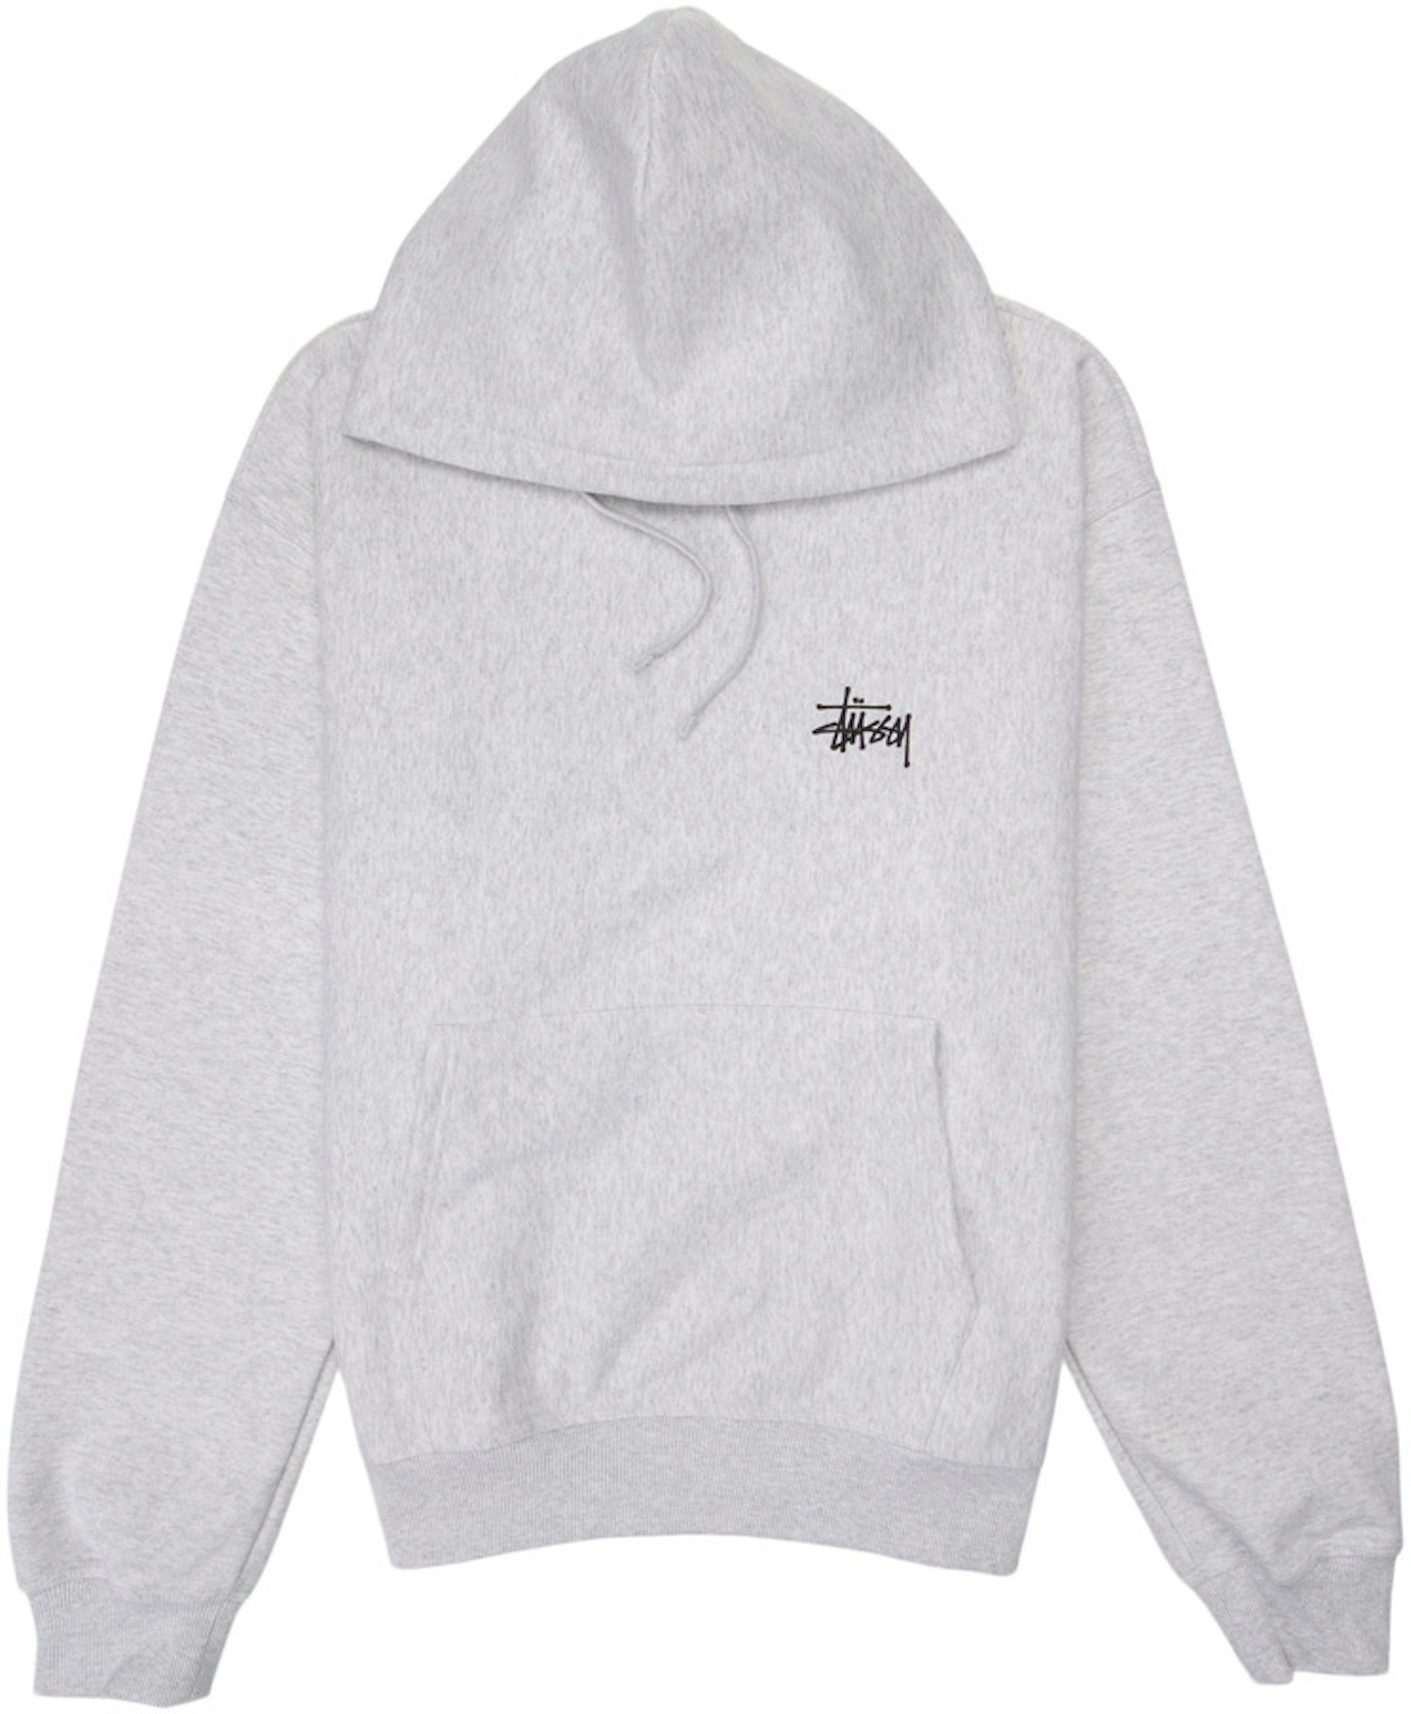 Buy STUSSY Monogram Fullprint Hoodie Sweater Large Size Online in